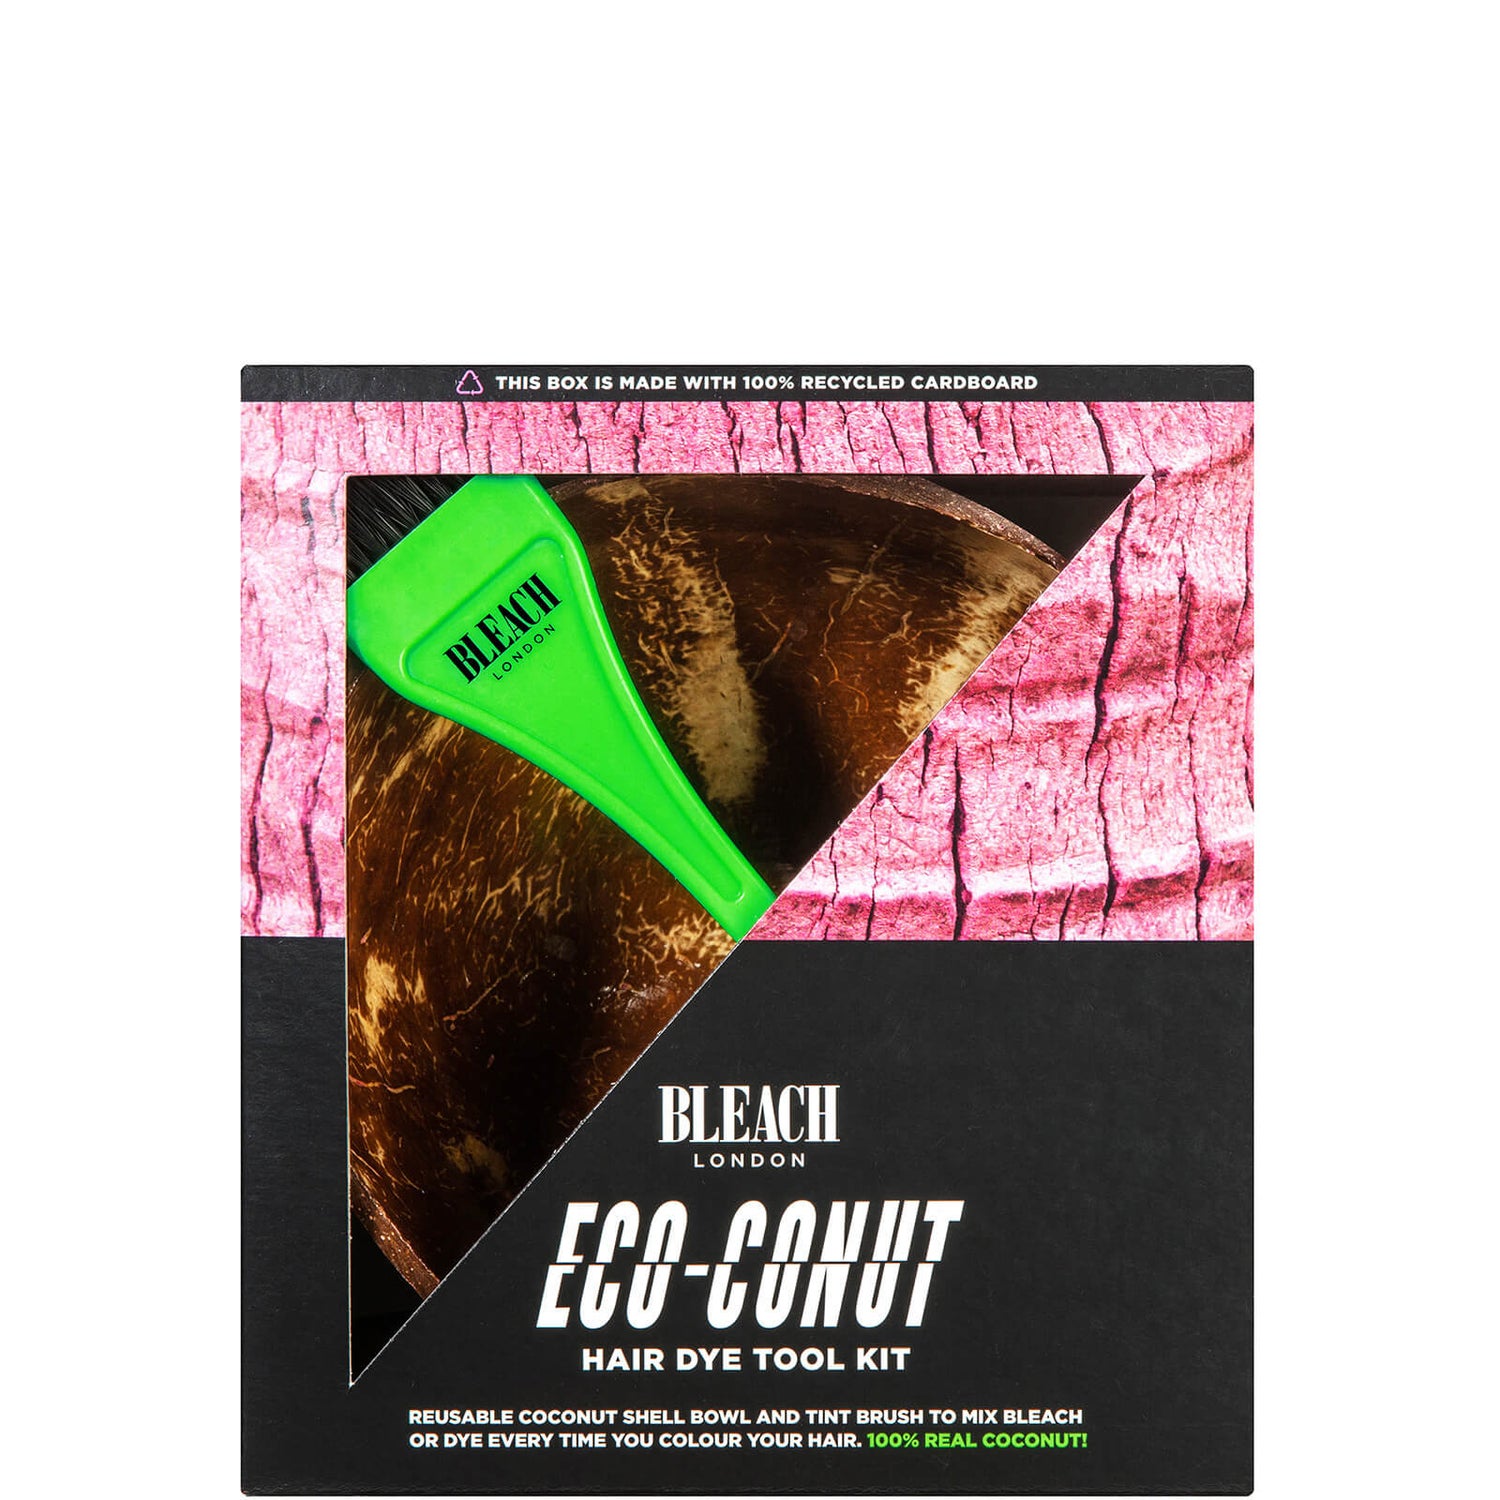 BLEACH LONDON Eco-Conut Hair Dye Tool Kit | Cult Beauty